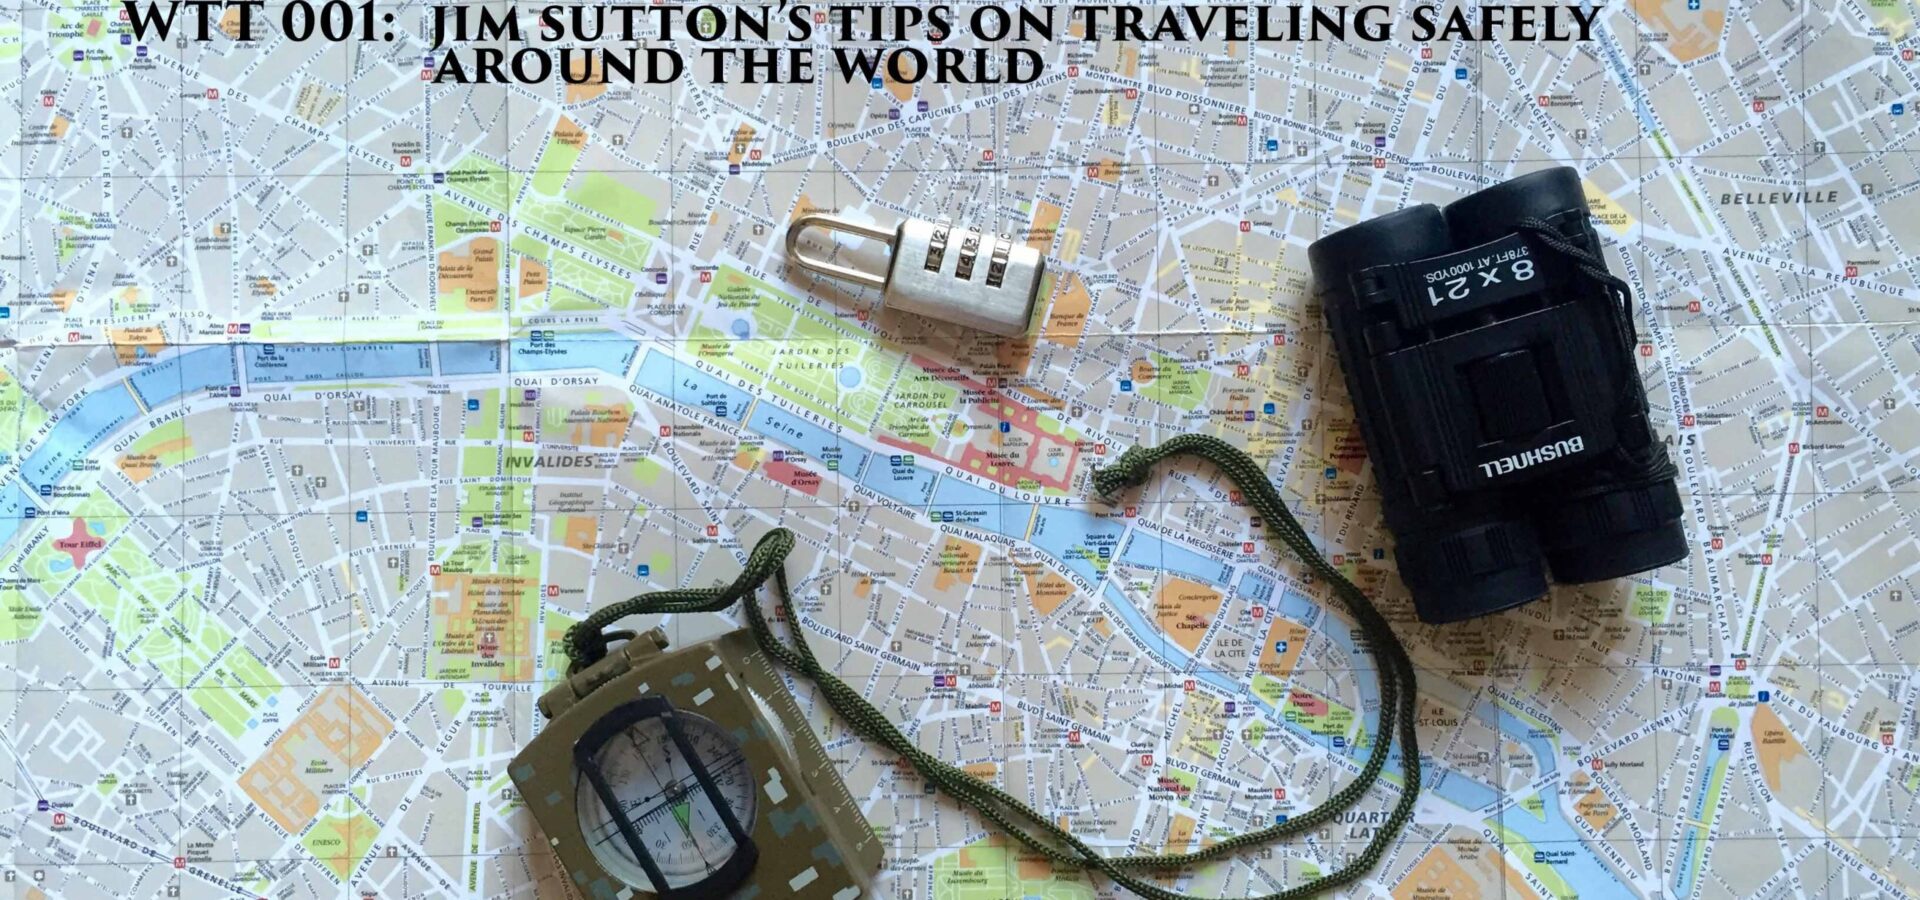 Jim Sutton travel security gadgets